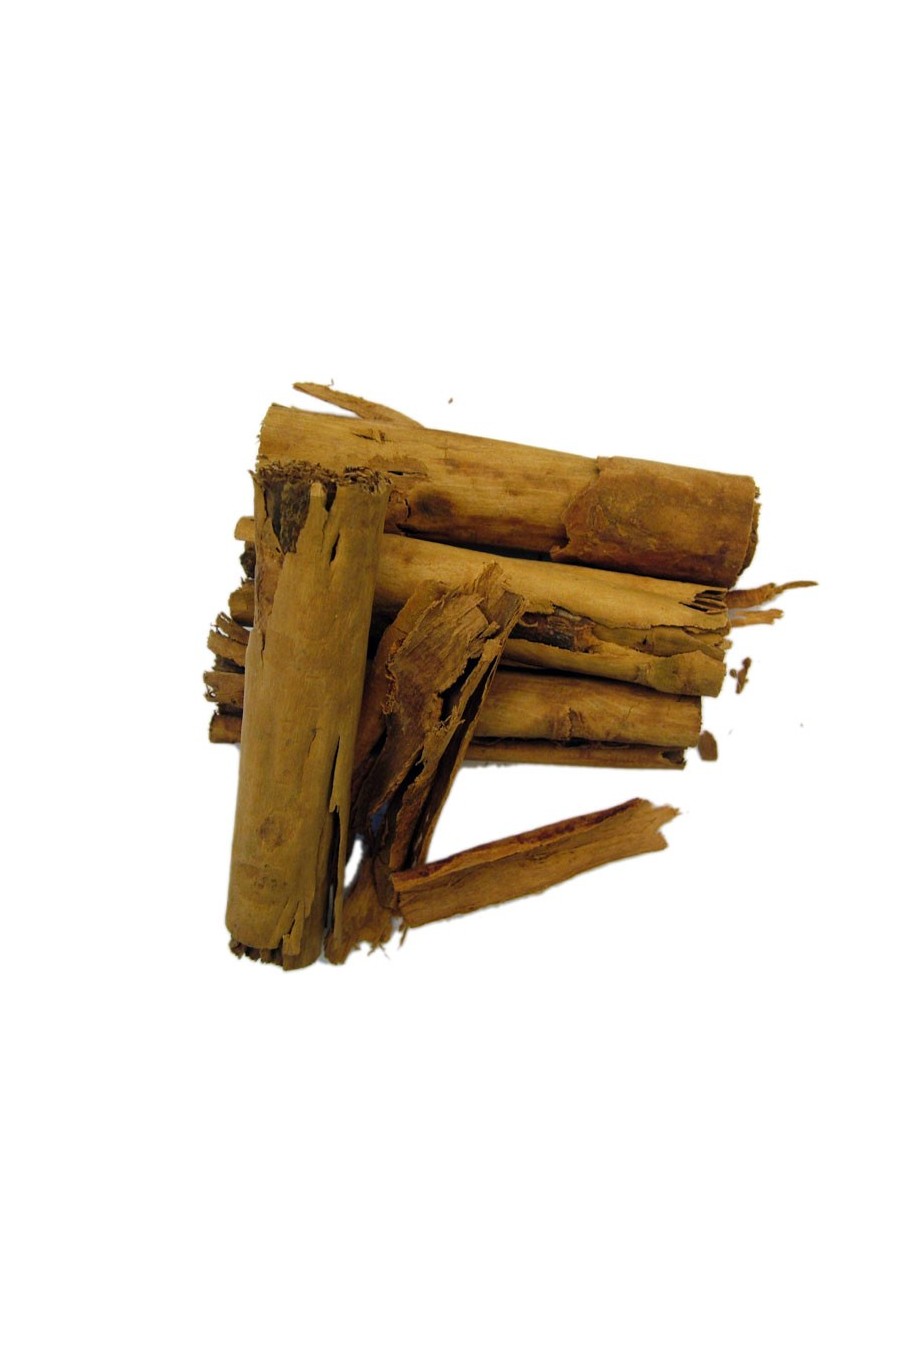 Cinnamon (Cinnamomum zeylanicum Nees)